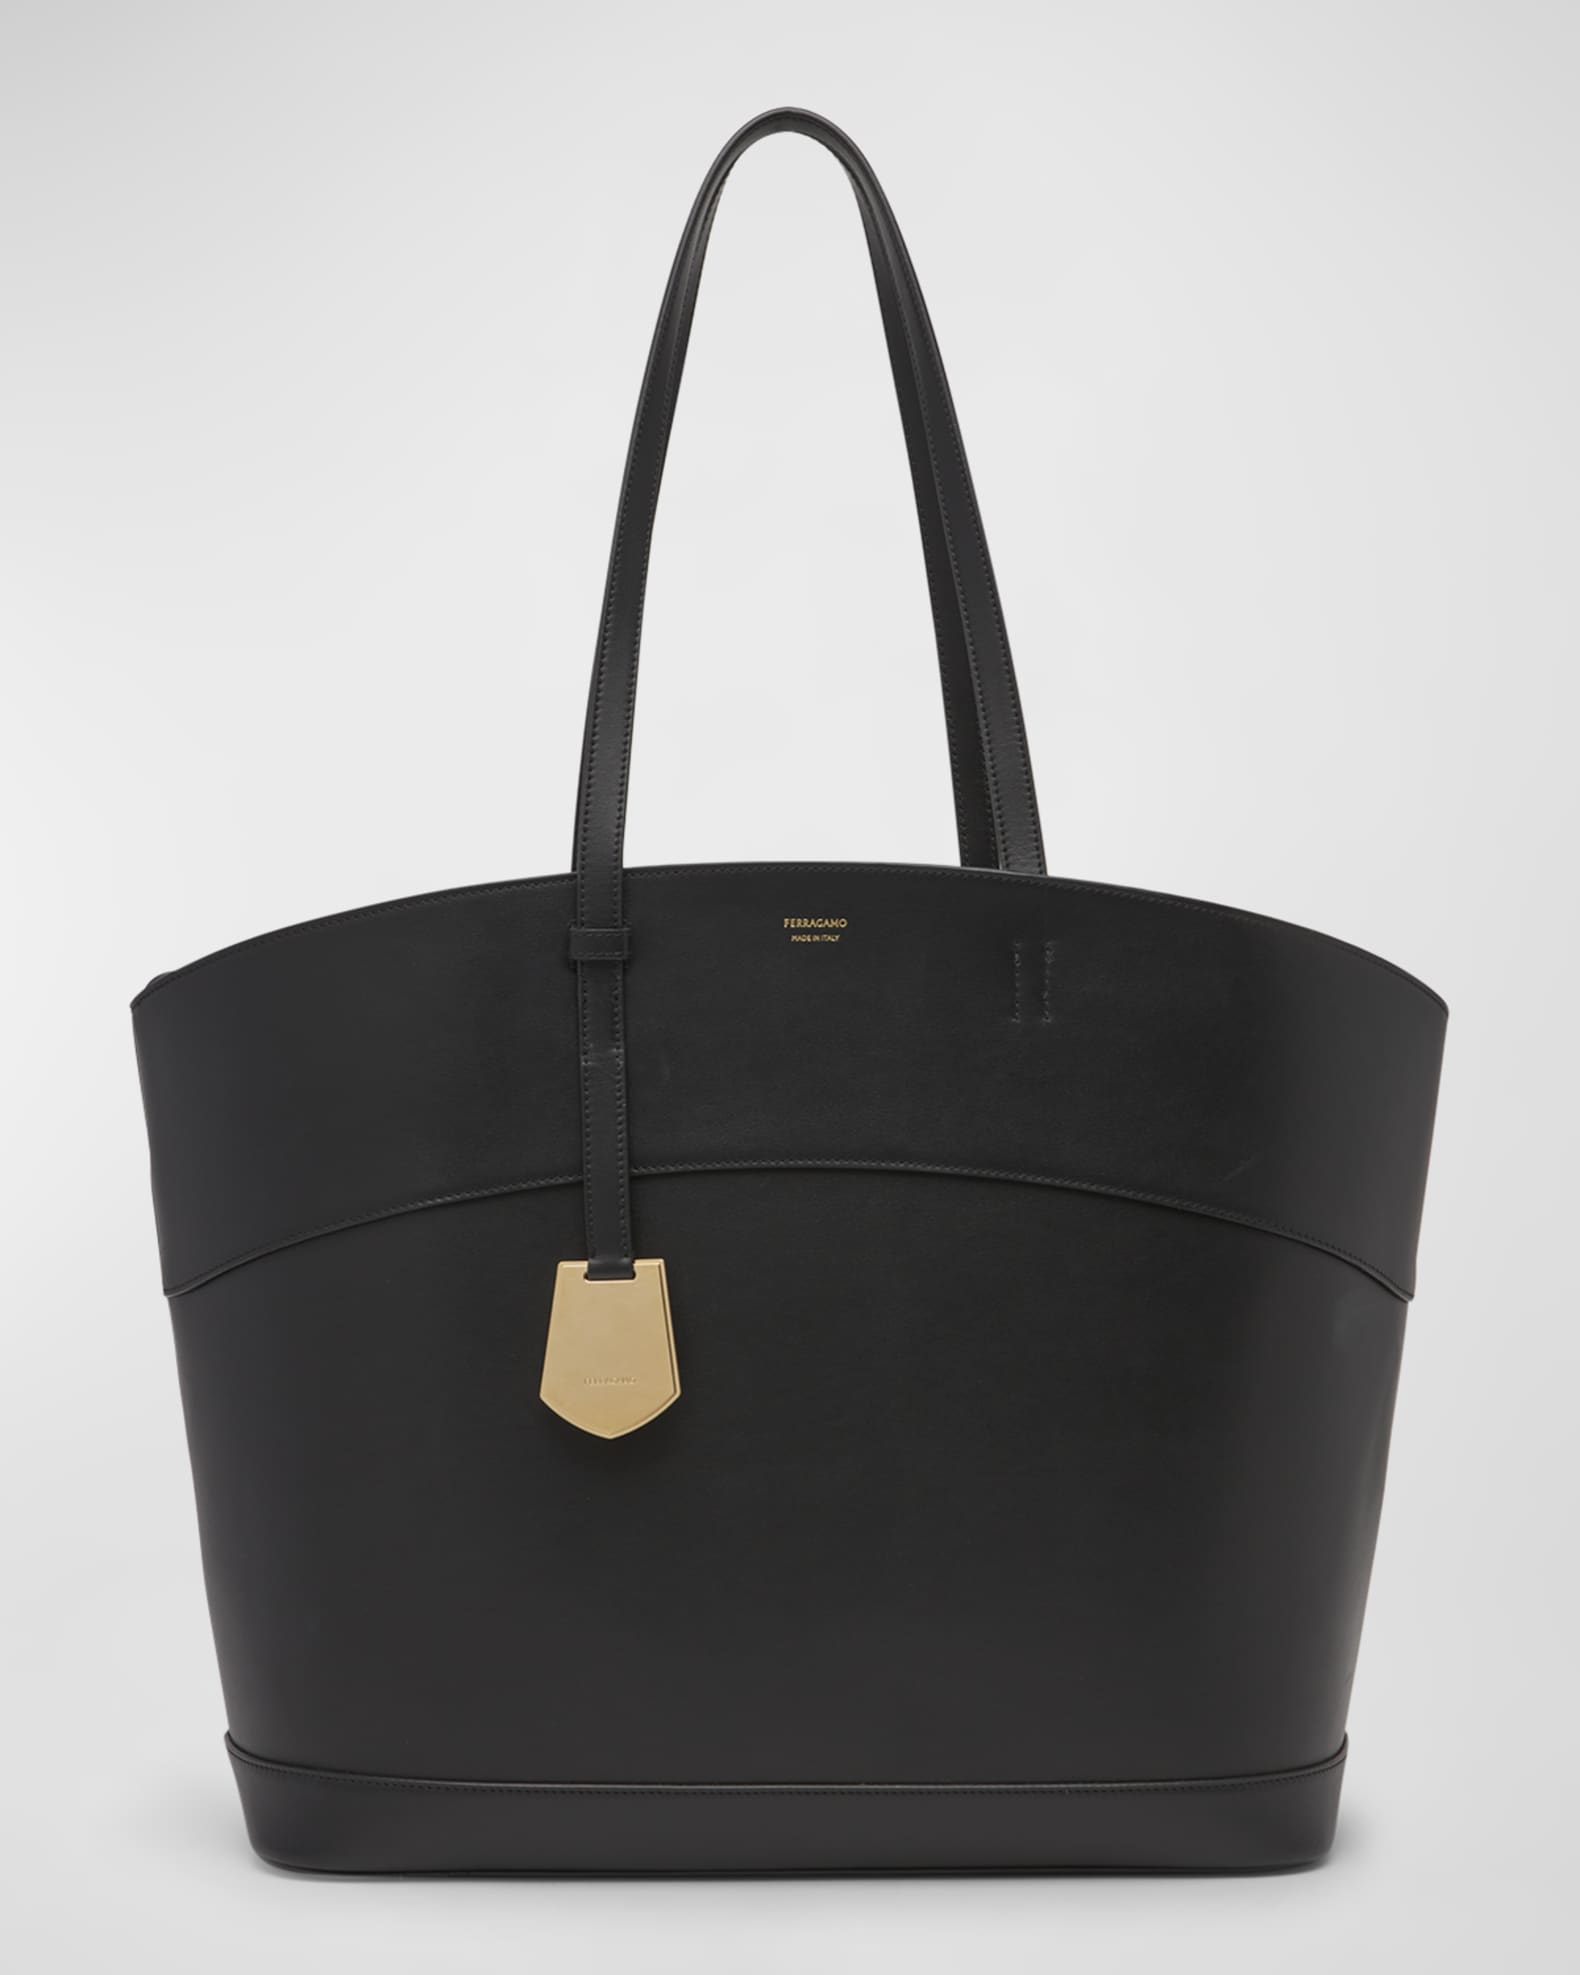 Designer Bag Dupes for Spring! - OLIVIA MAY BELL